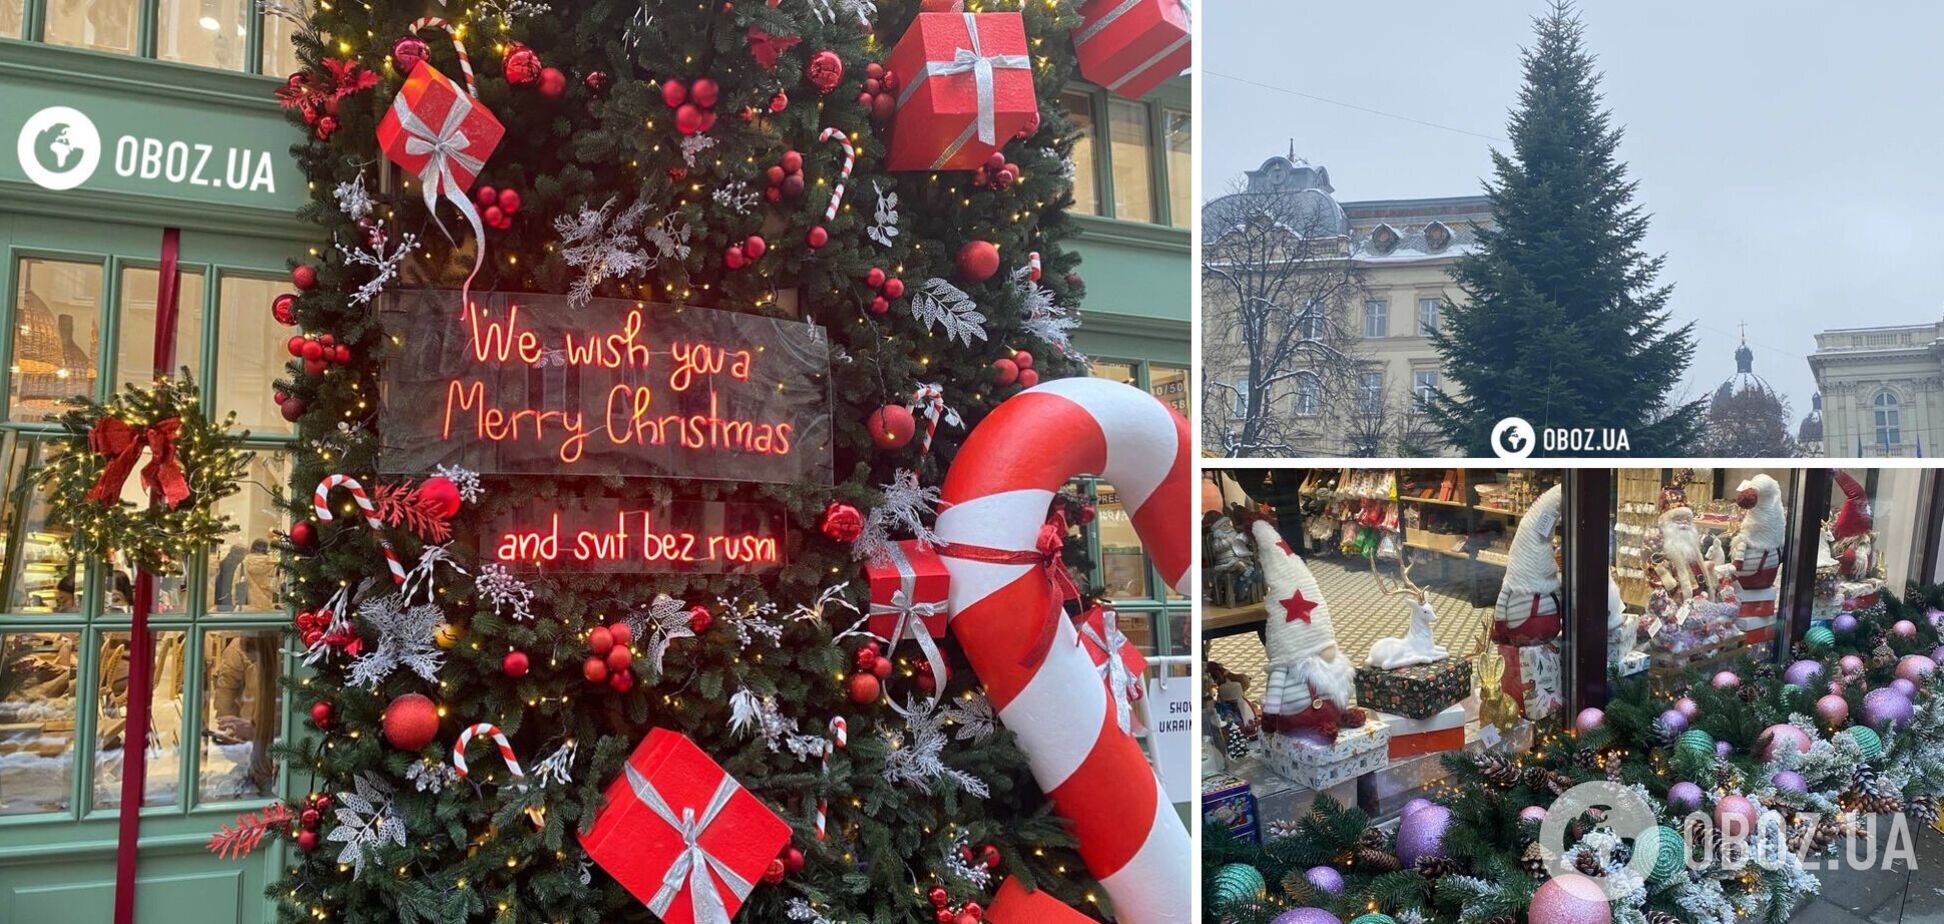 Во Львове установили новогоднюю елку: город активно готовится к Рождеству. Фоторепортаж